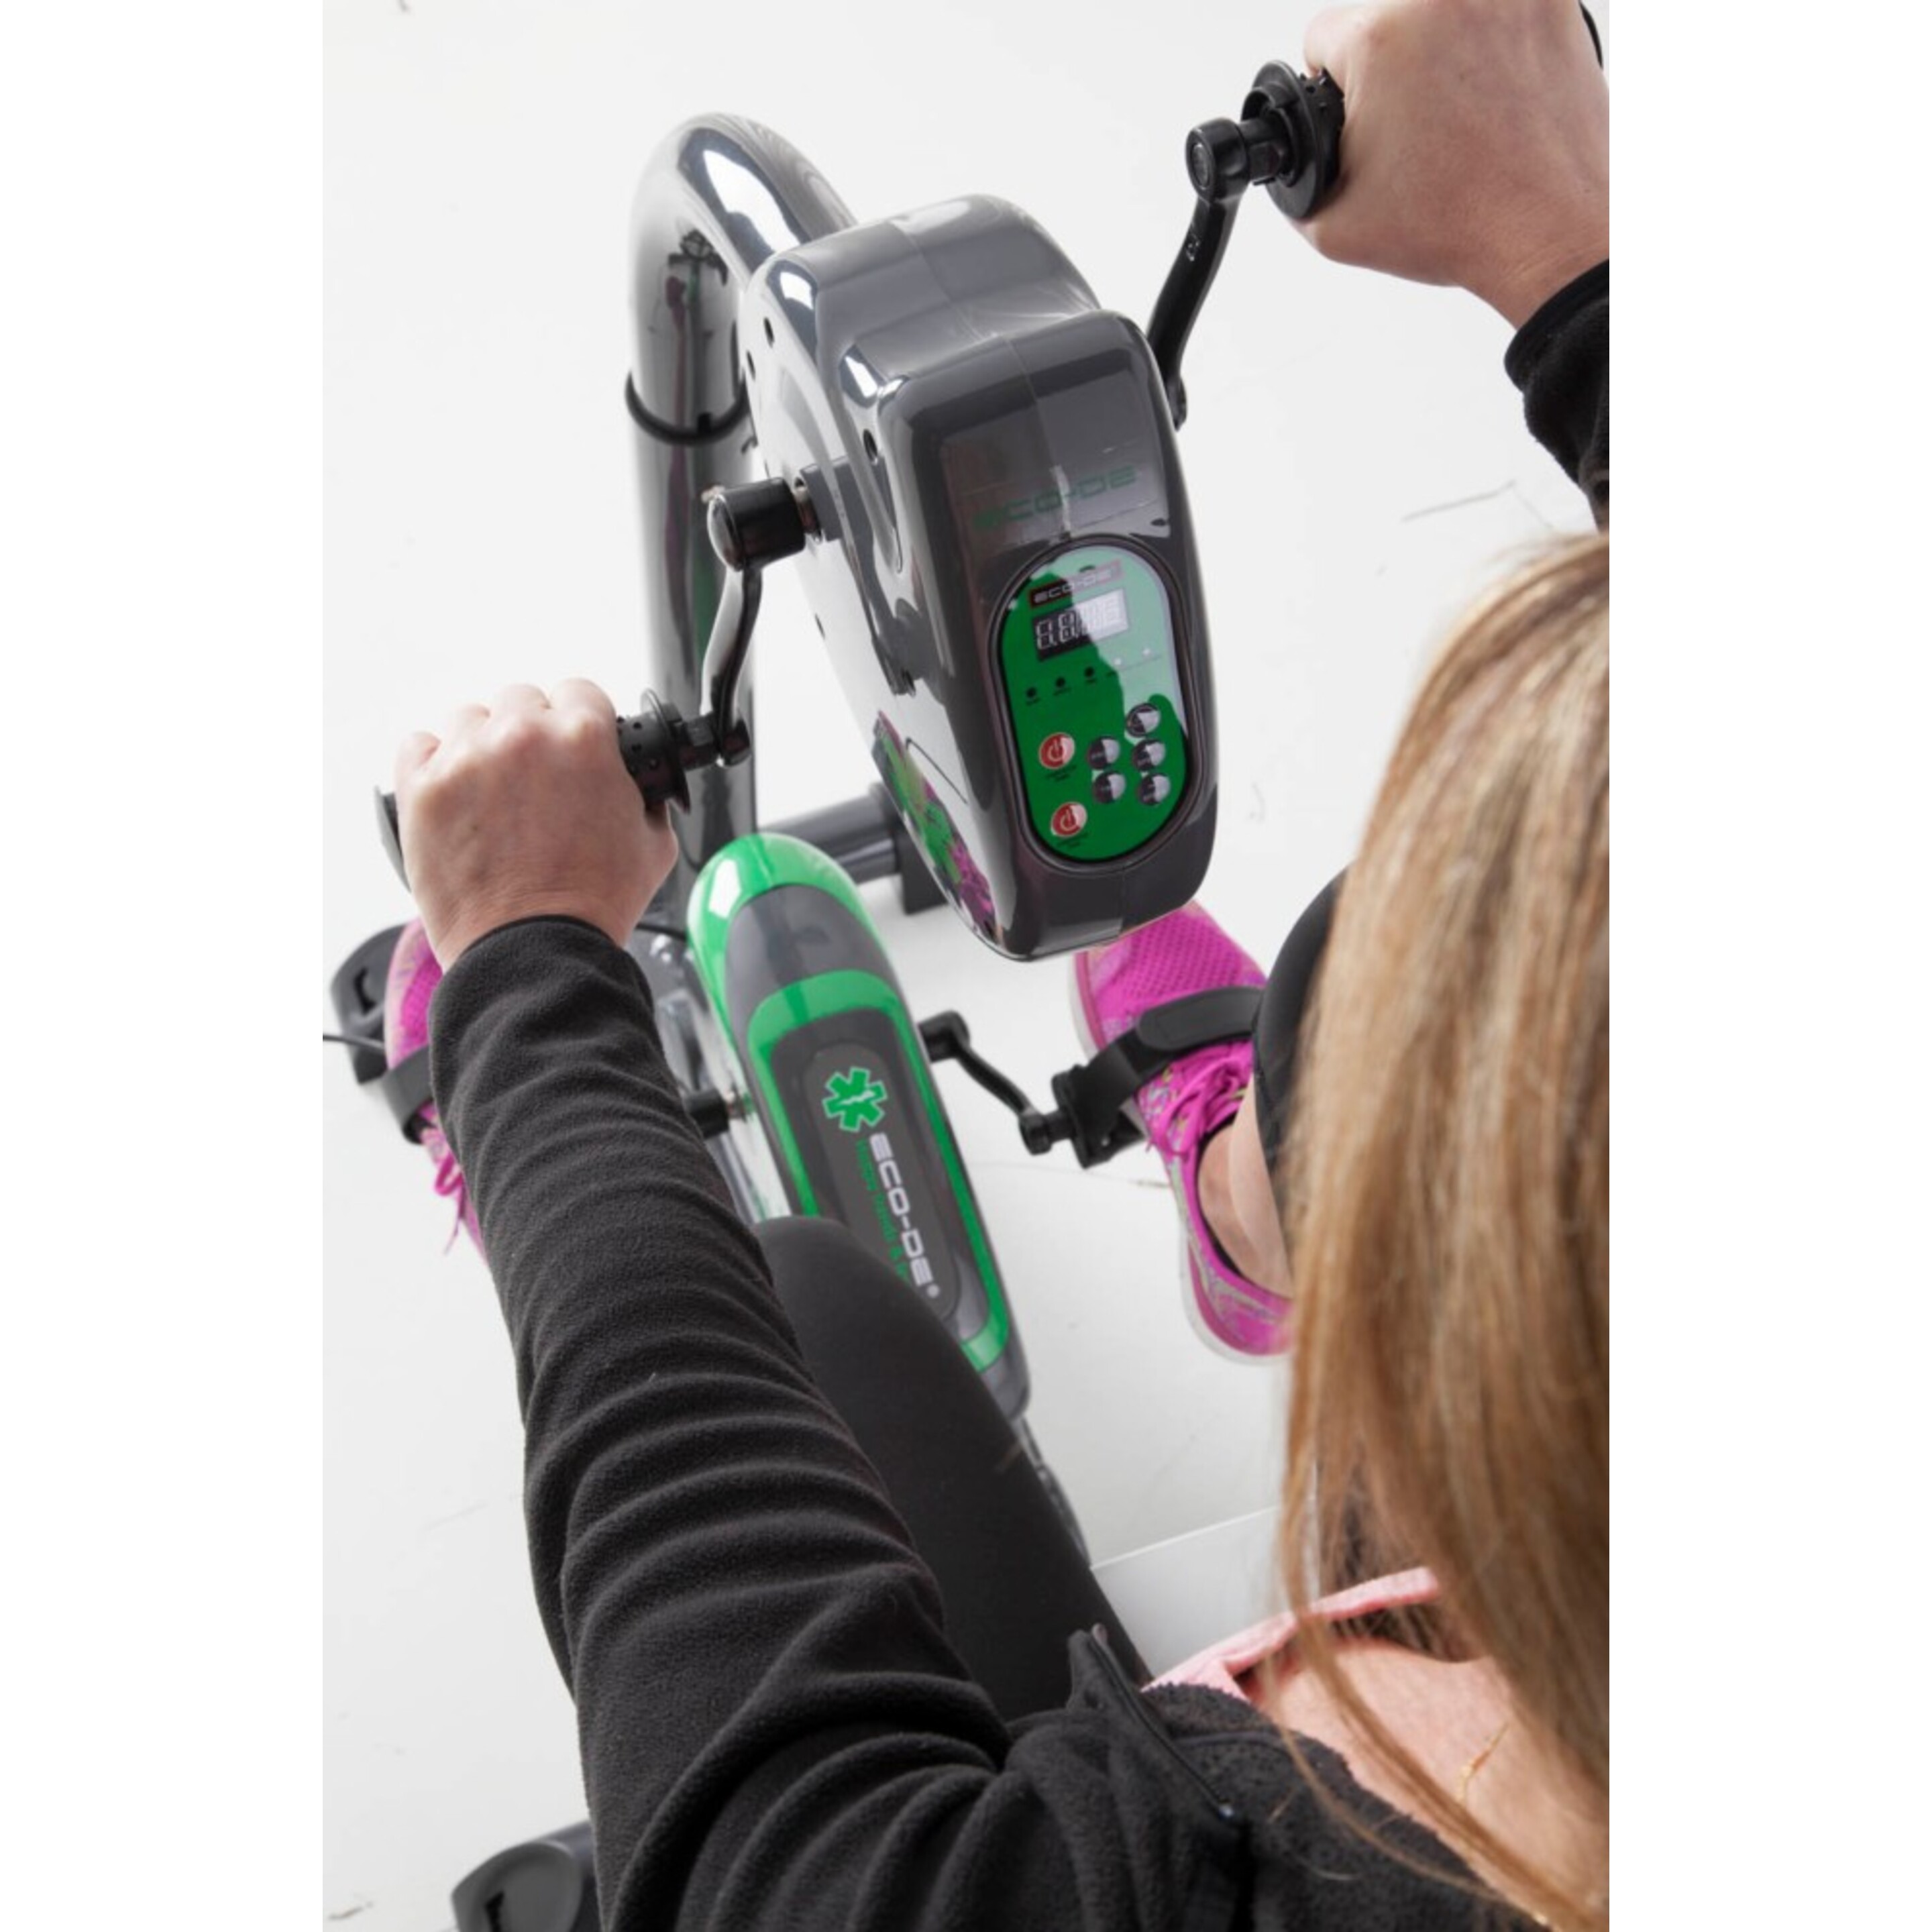 Pedaleador Piernas Y Brazos Dual Training Eco-de - Gris/Verde - Bicicleta Estática Para  MKP